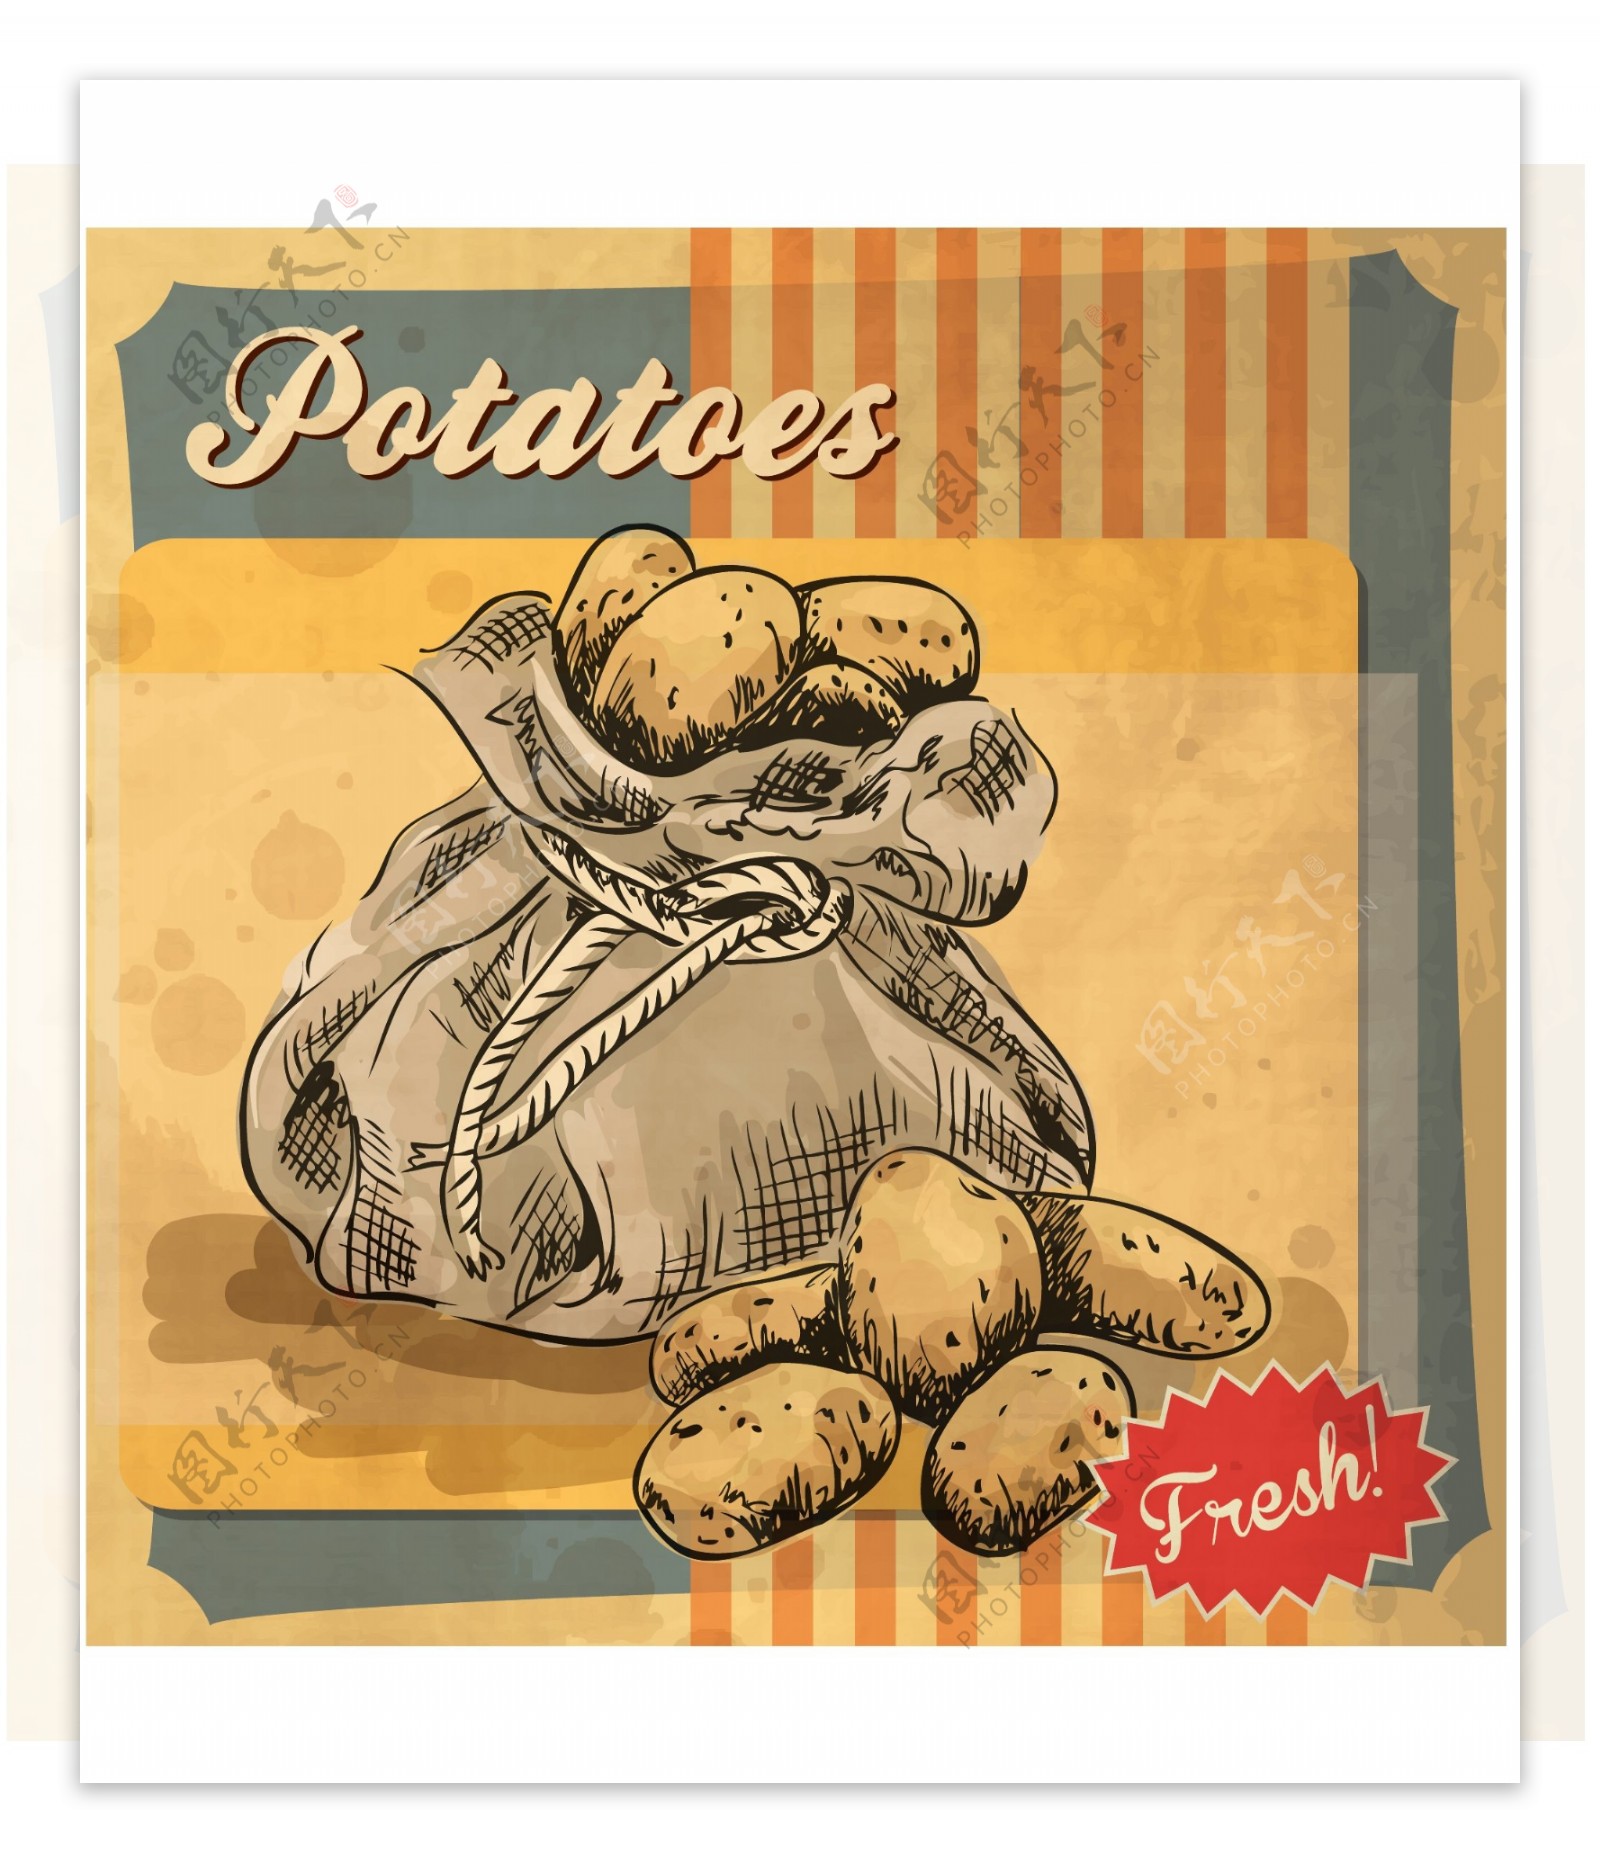 袋子里的土豆